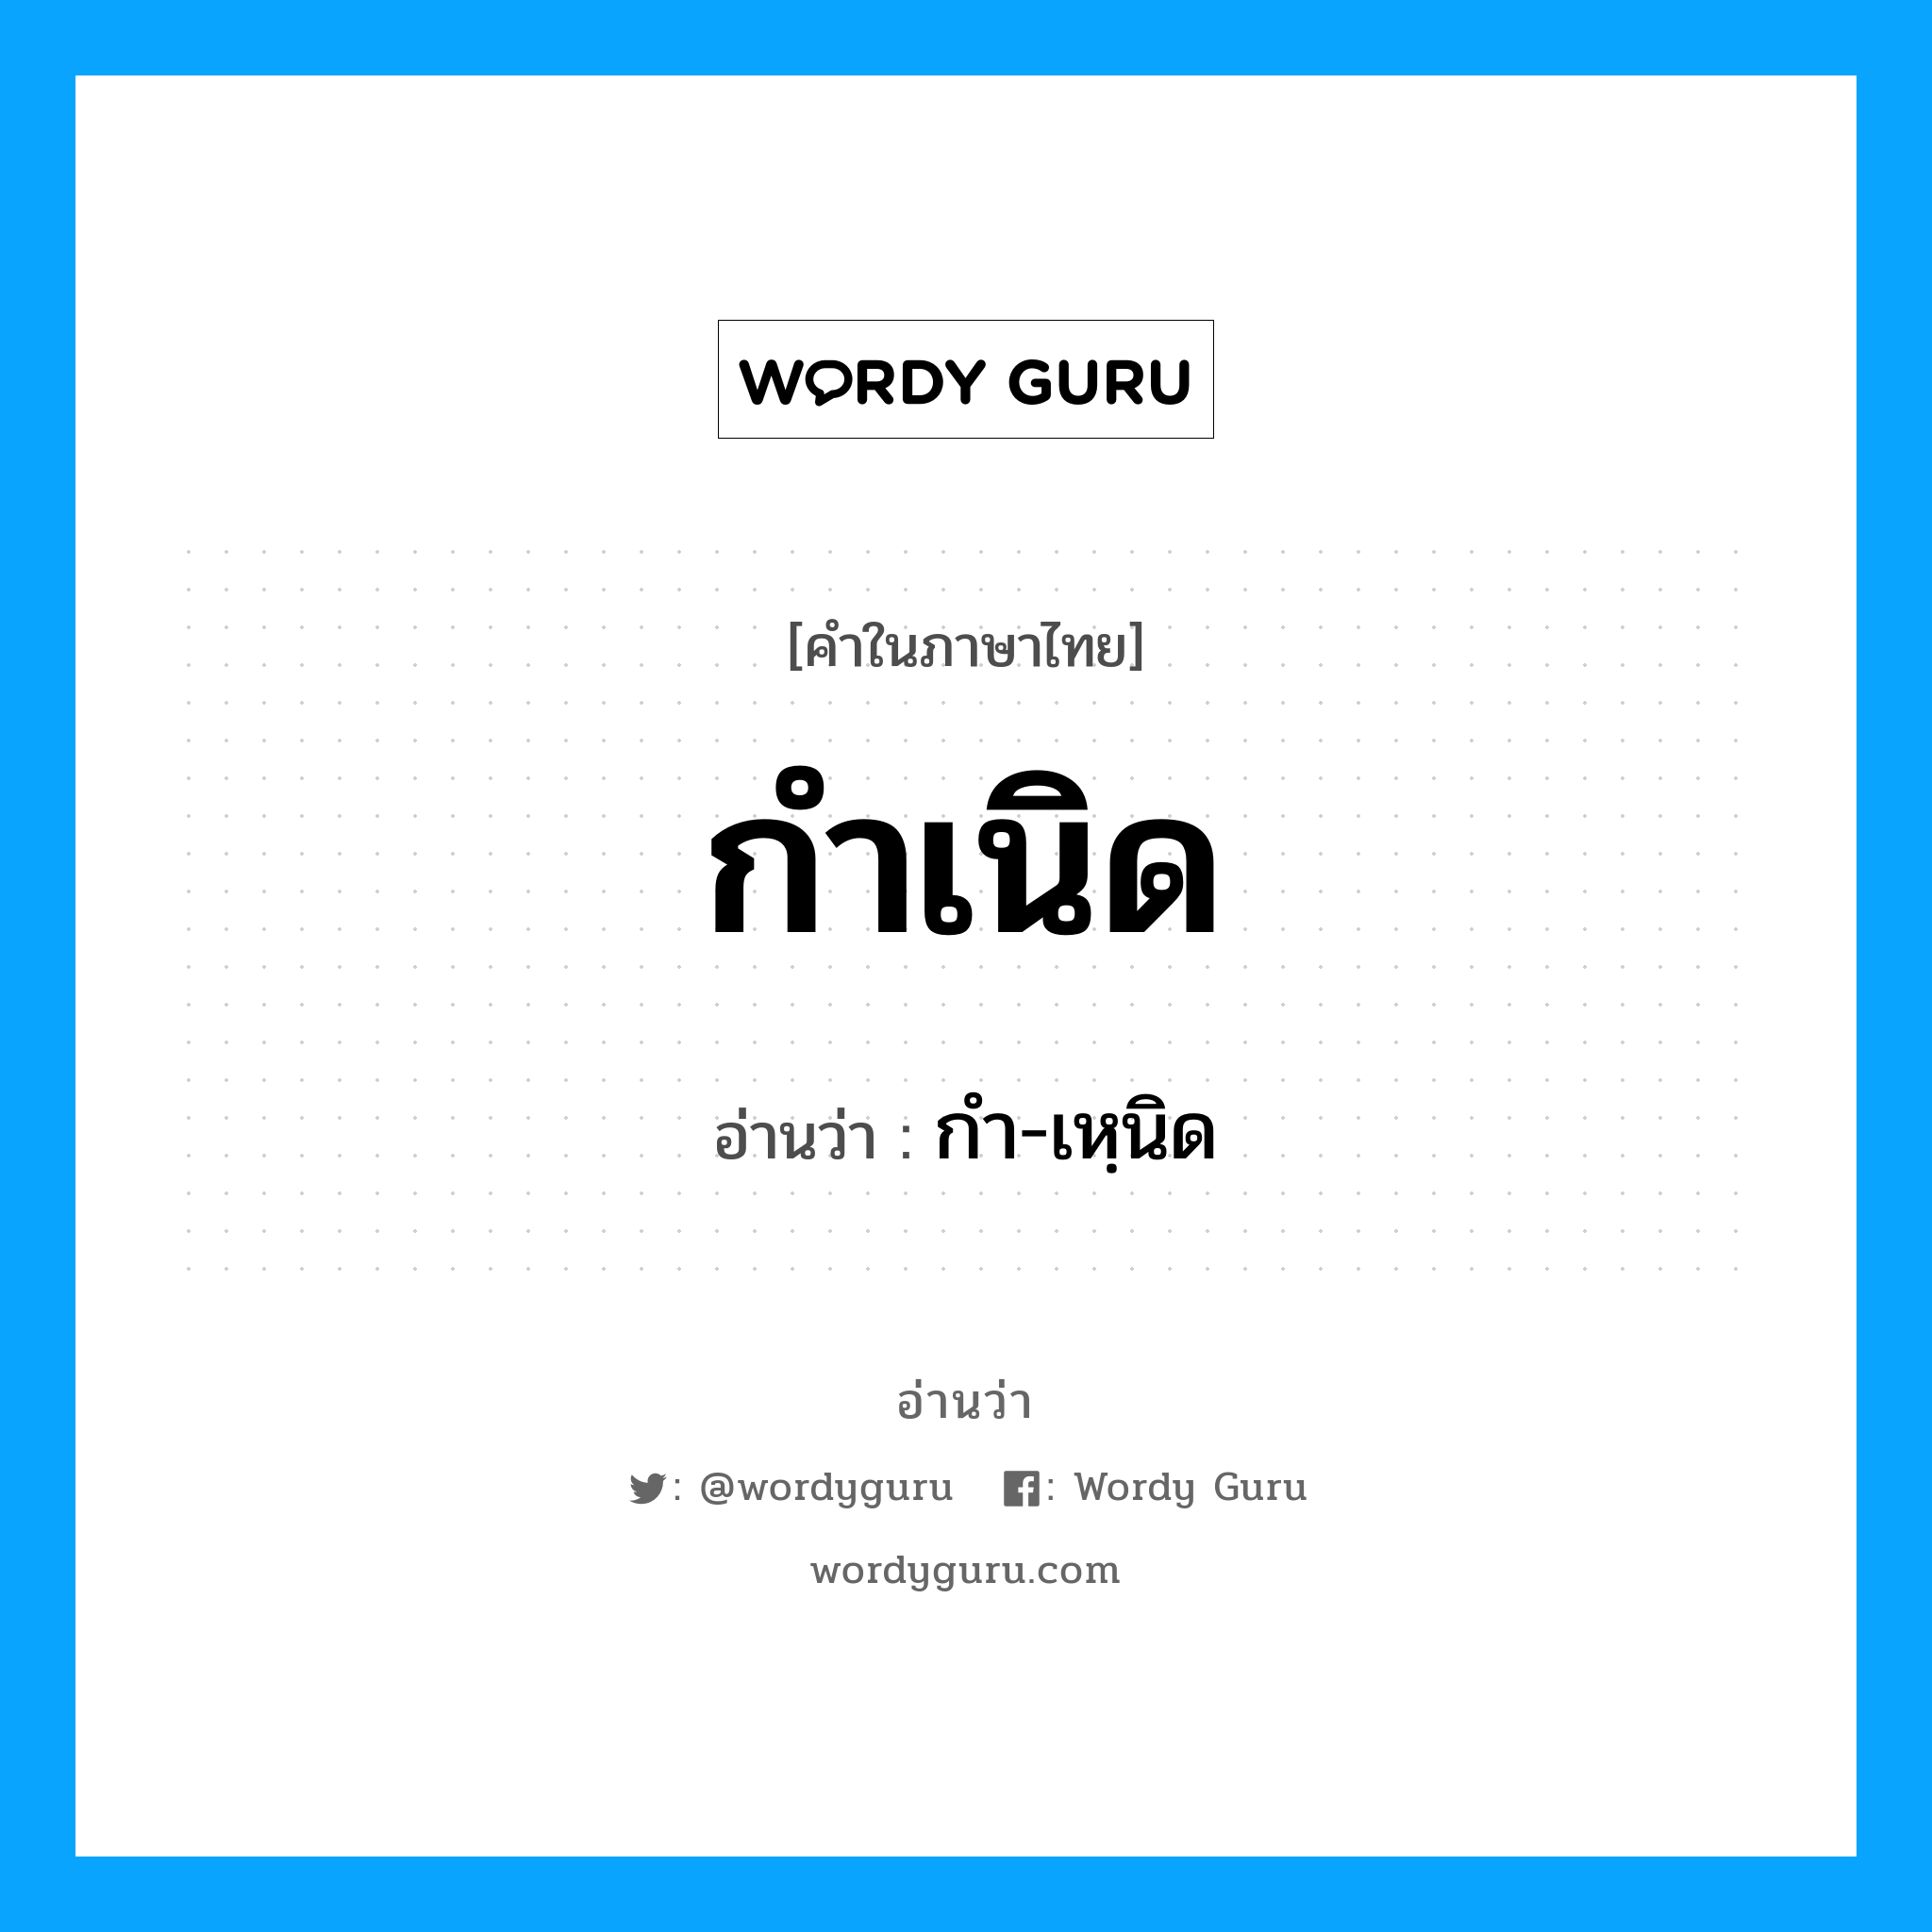 กำ-เหฺนิด เป็นคำอ่านของคำไหน?, คำในภาษาไทย กำ-เหฺนิด อ่านว่า กำเนิด